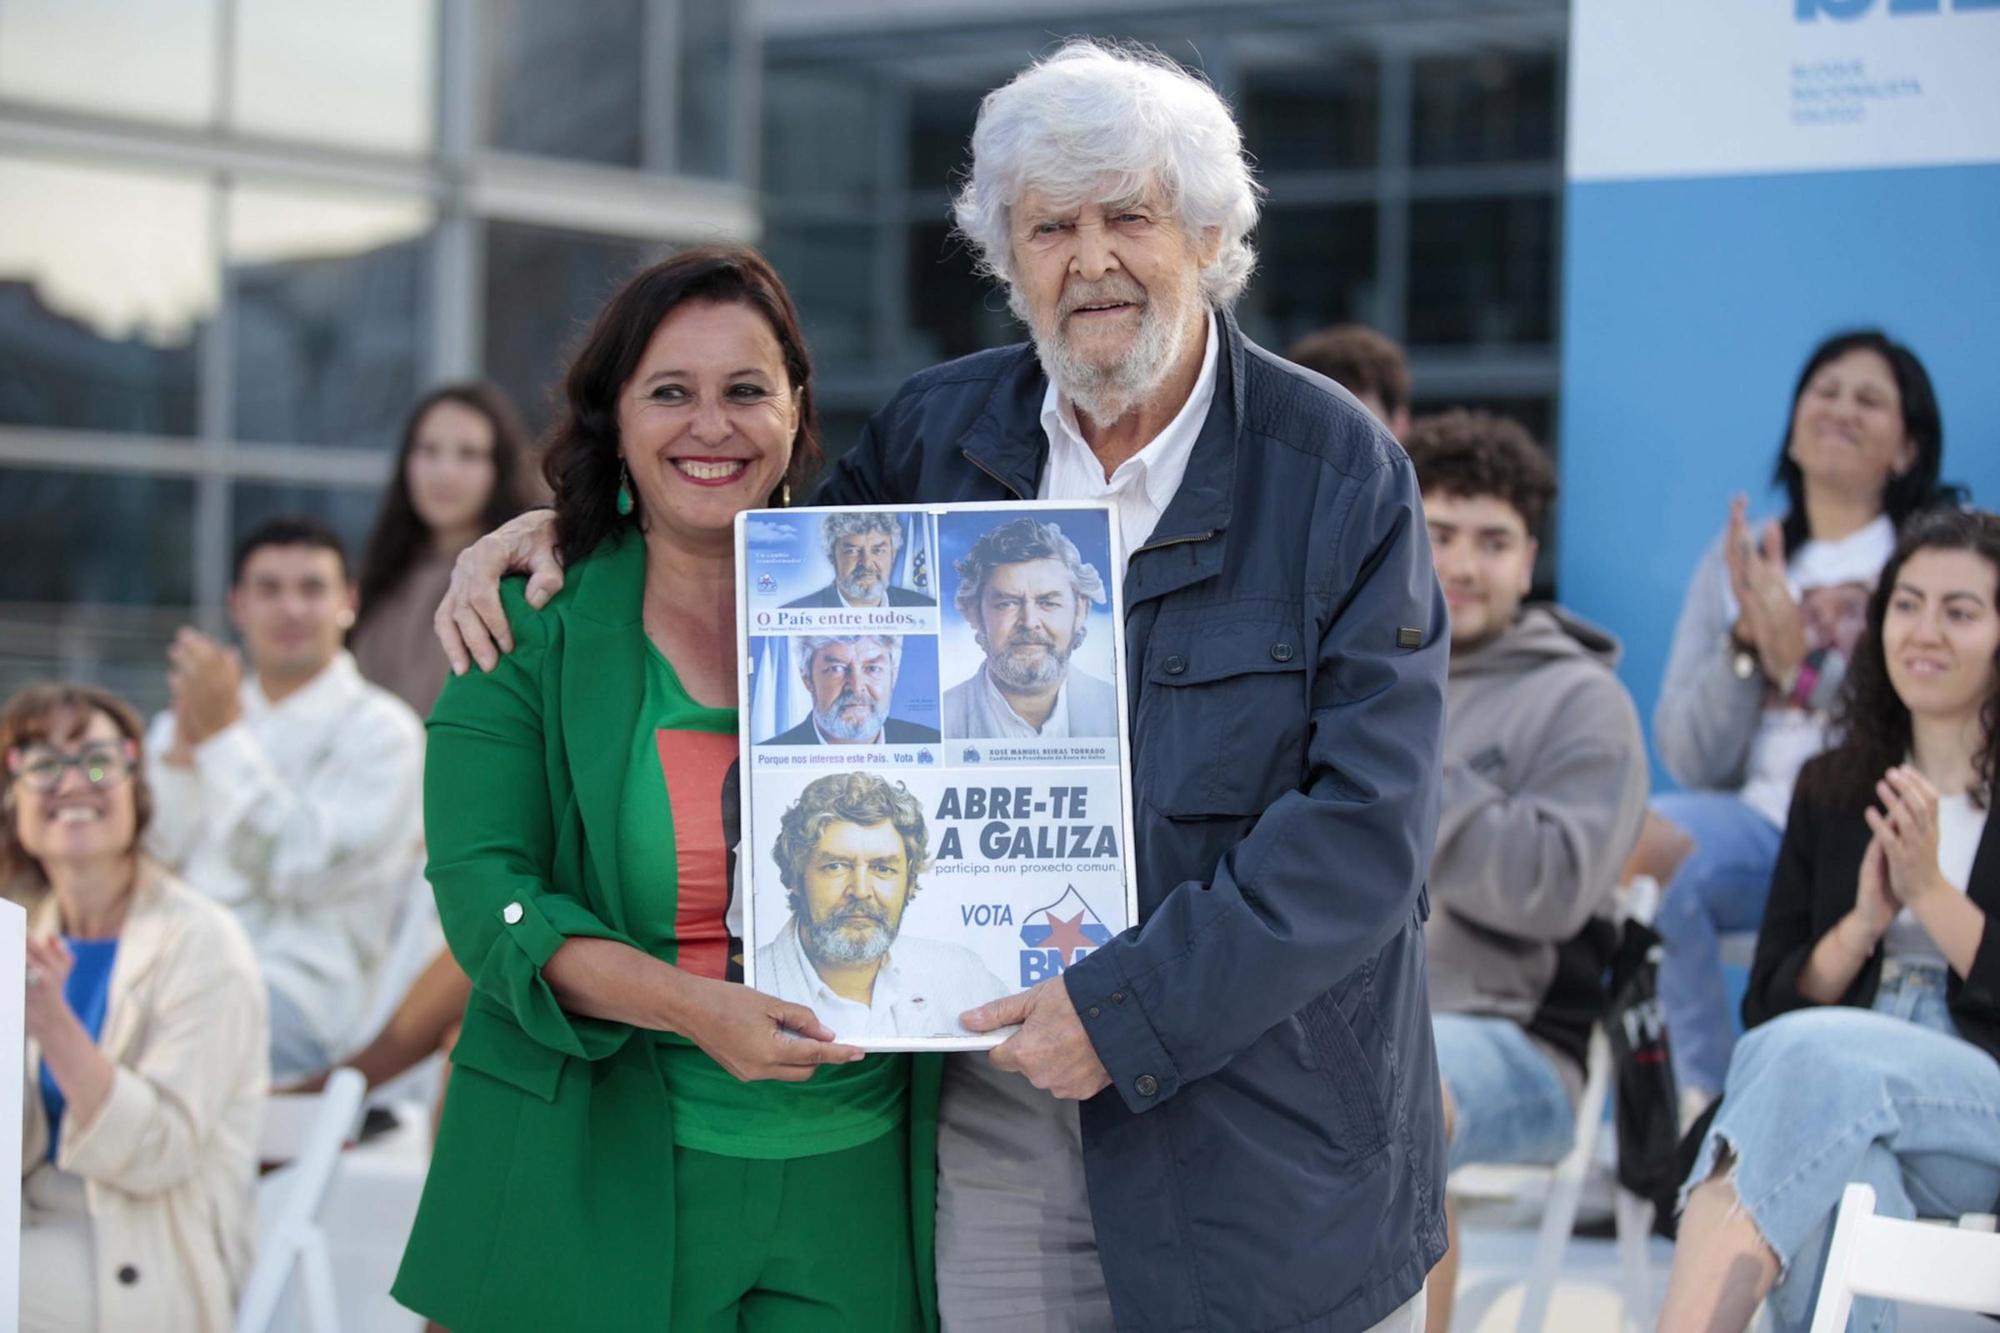 Beiras vuelve en A Coruña a un mitin del BNG para pedir el voto: “Tenemos que lograr que Ana Miranda esté en Europa”